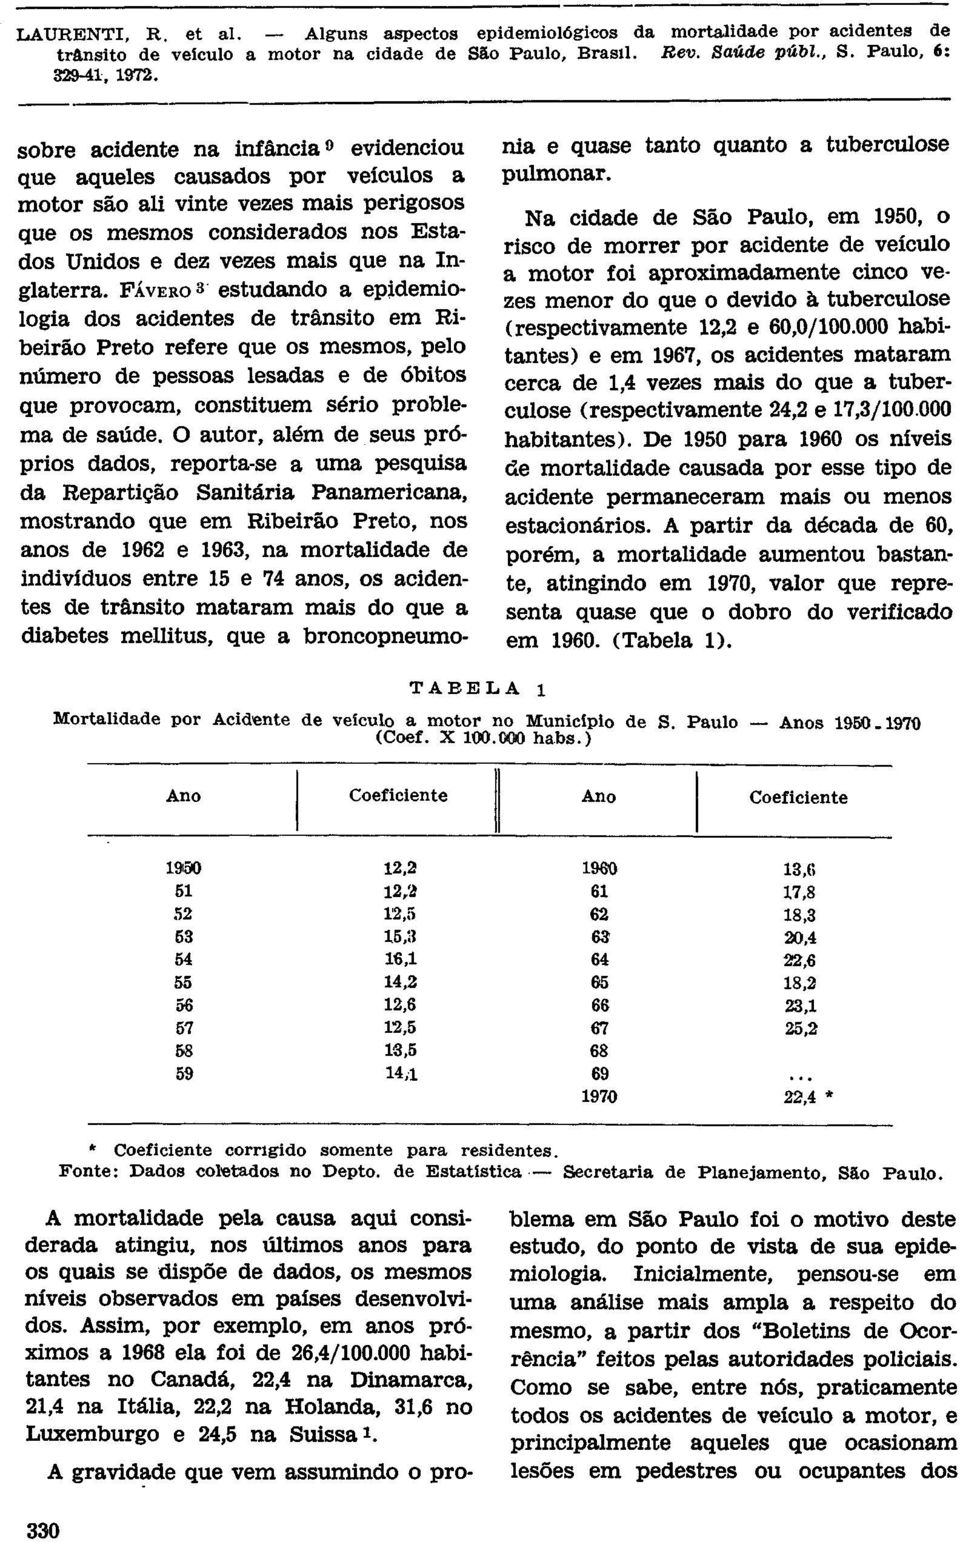 O autor, além de seus próprios dados, reporta-se a uma pesquisa da Repartição Sanitária Panamericana, mostrando que em Ribeirão Preto, nos anos de 1962 e 1963, na mortalidade de indivíduos entre 15 e